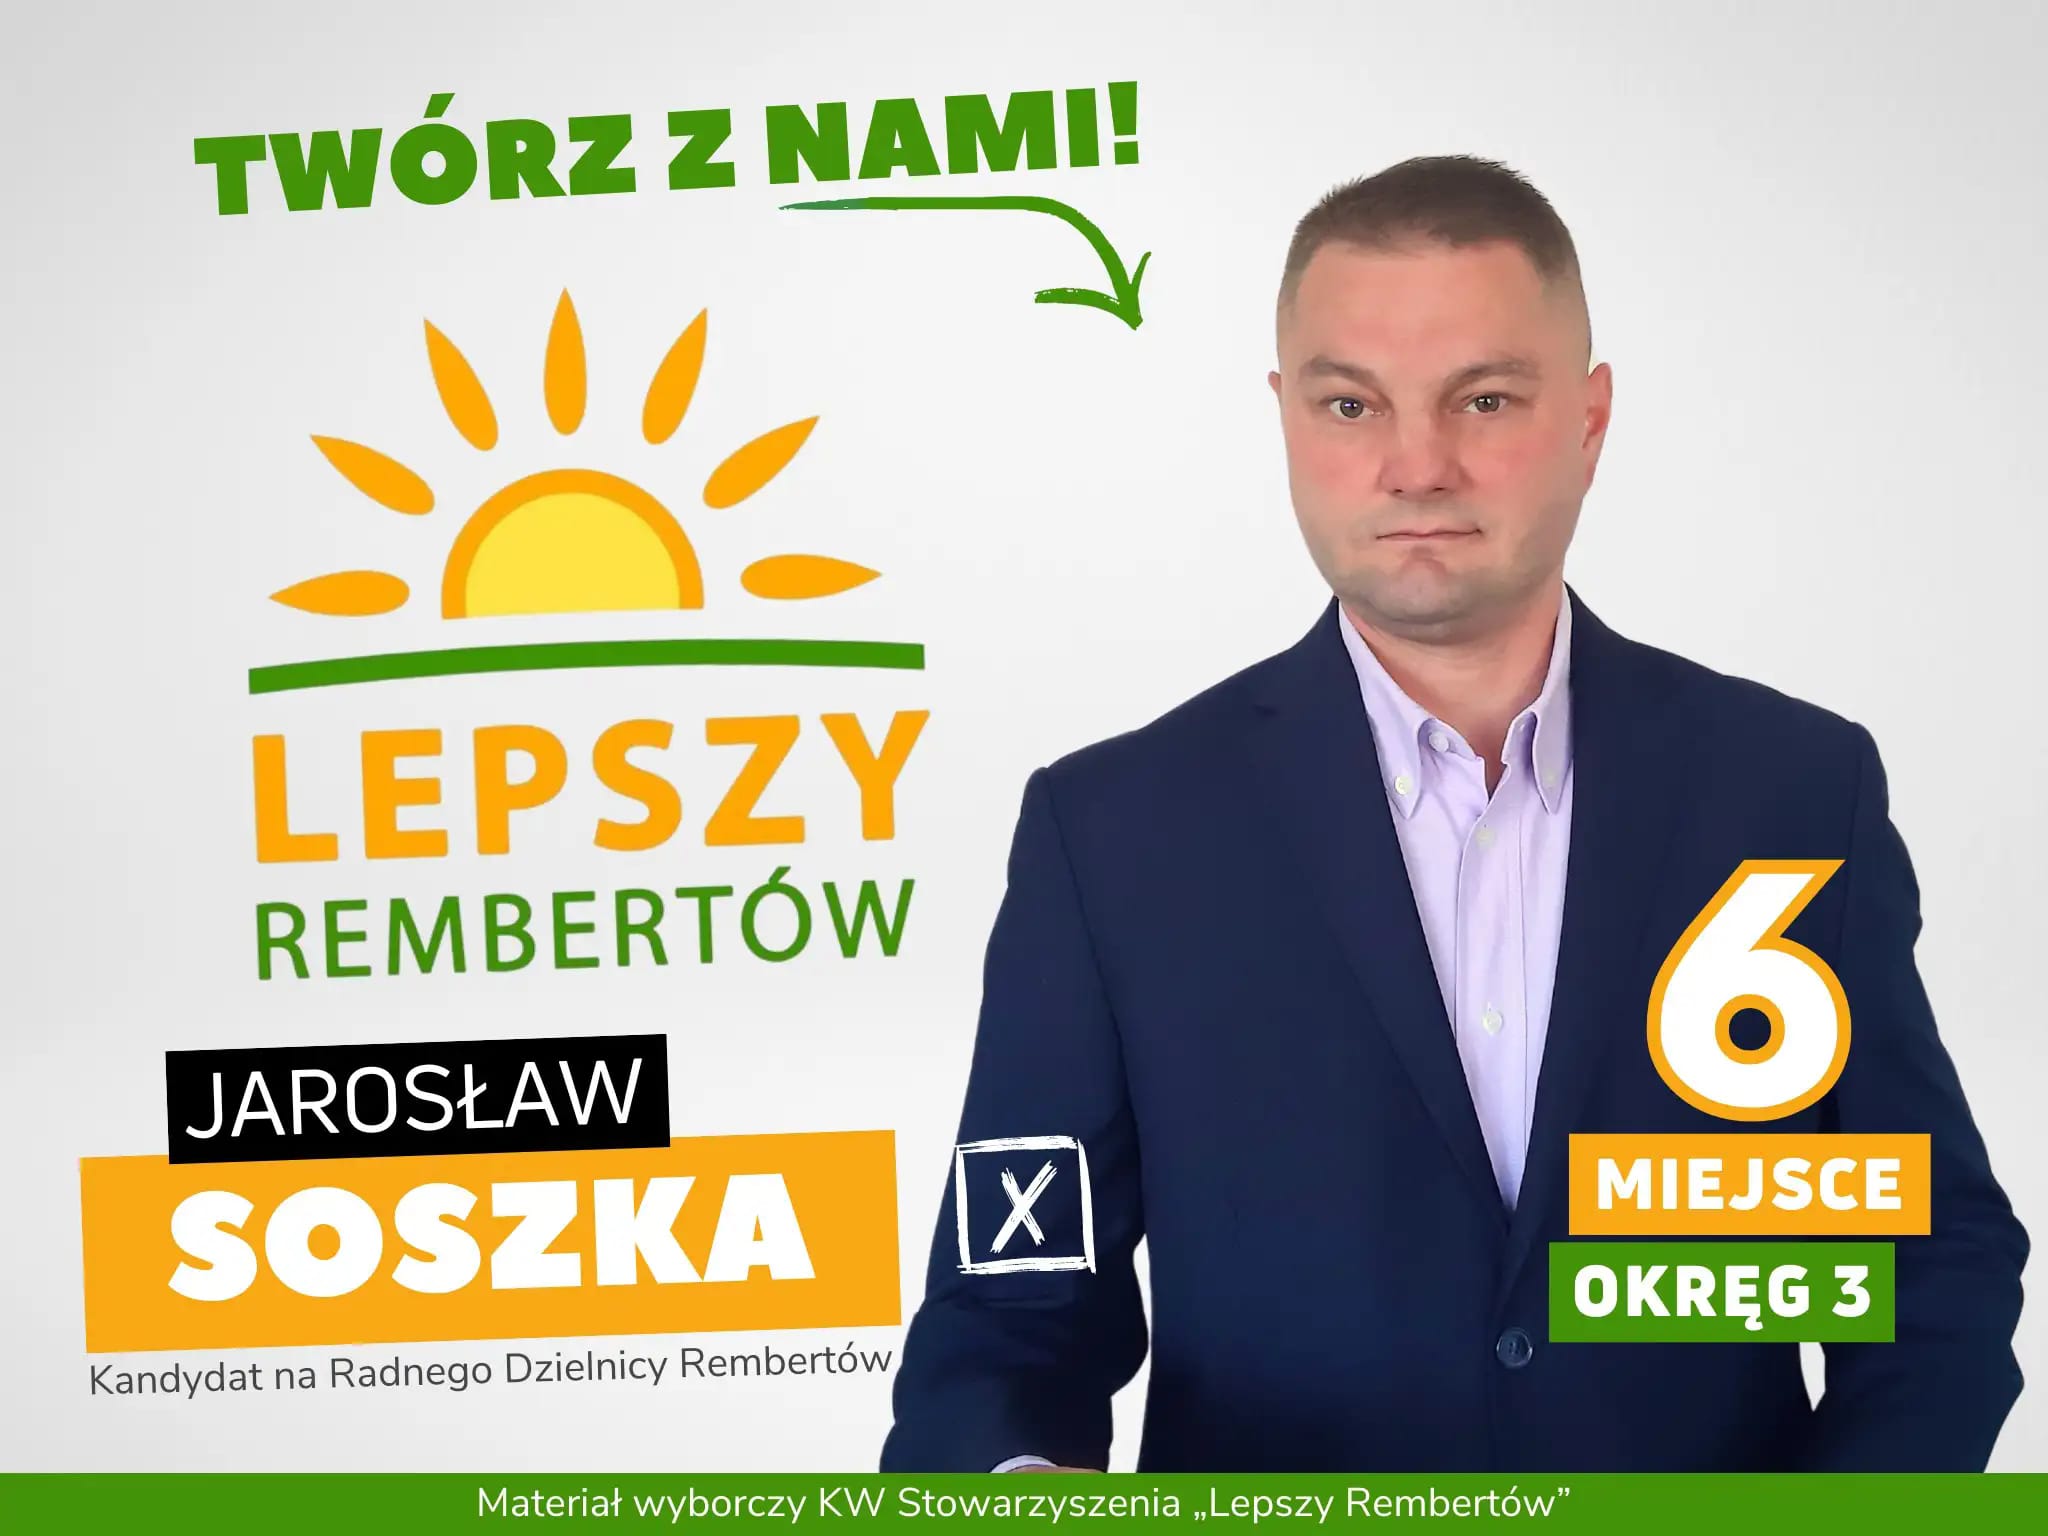 Jarosław Soszka Okręg 3 miejsce 6